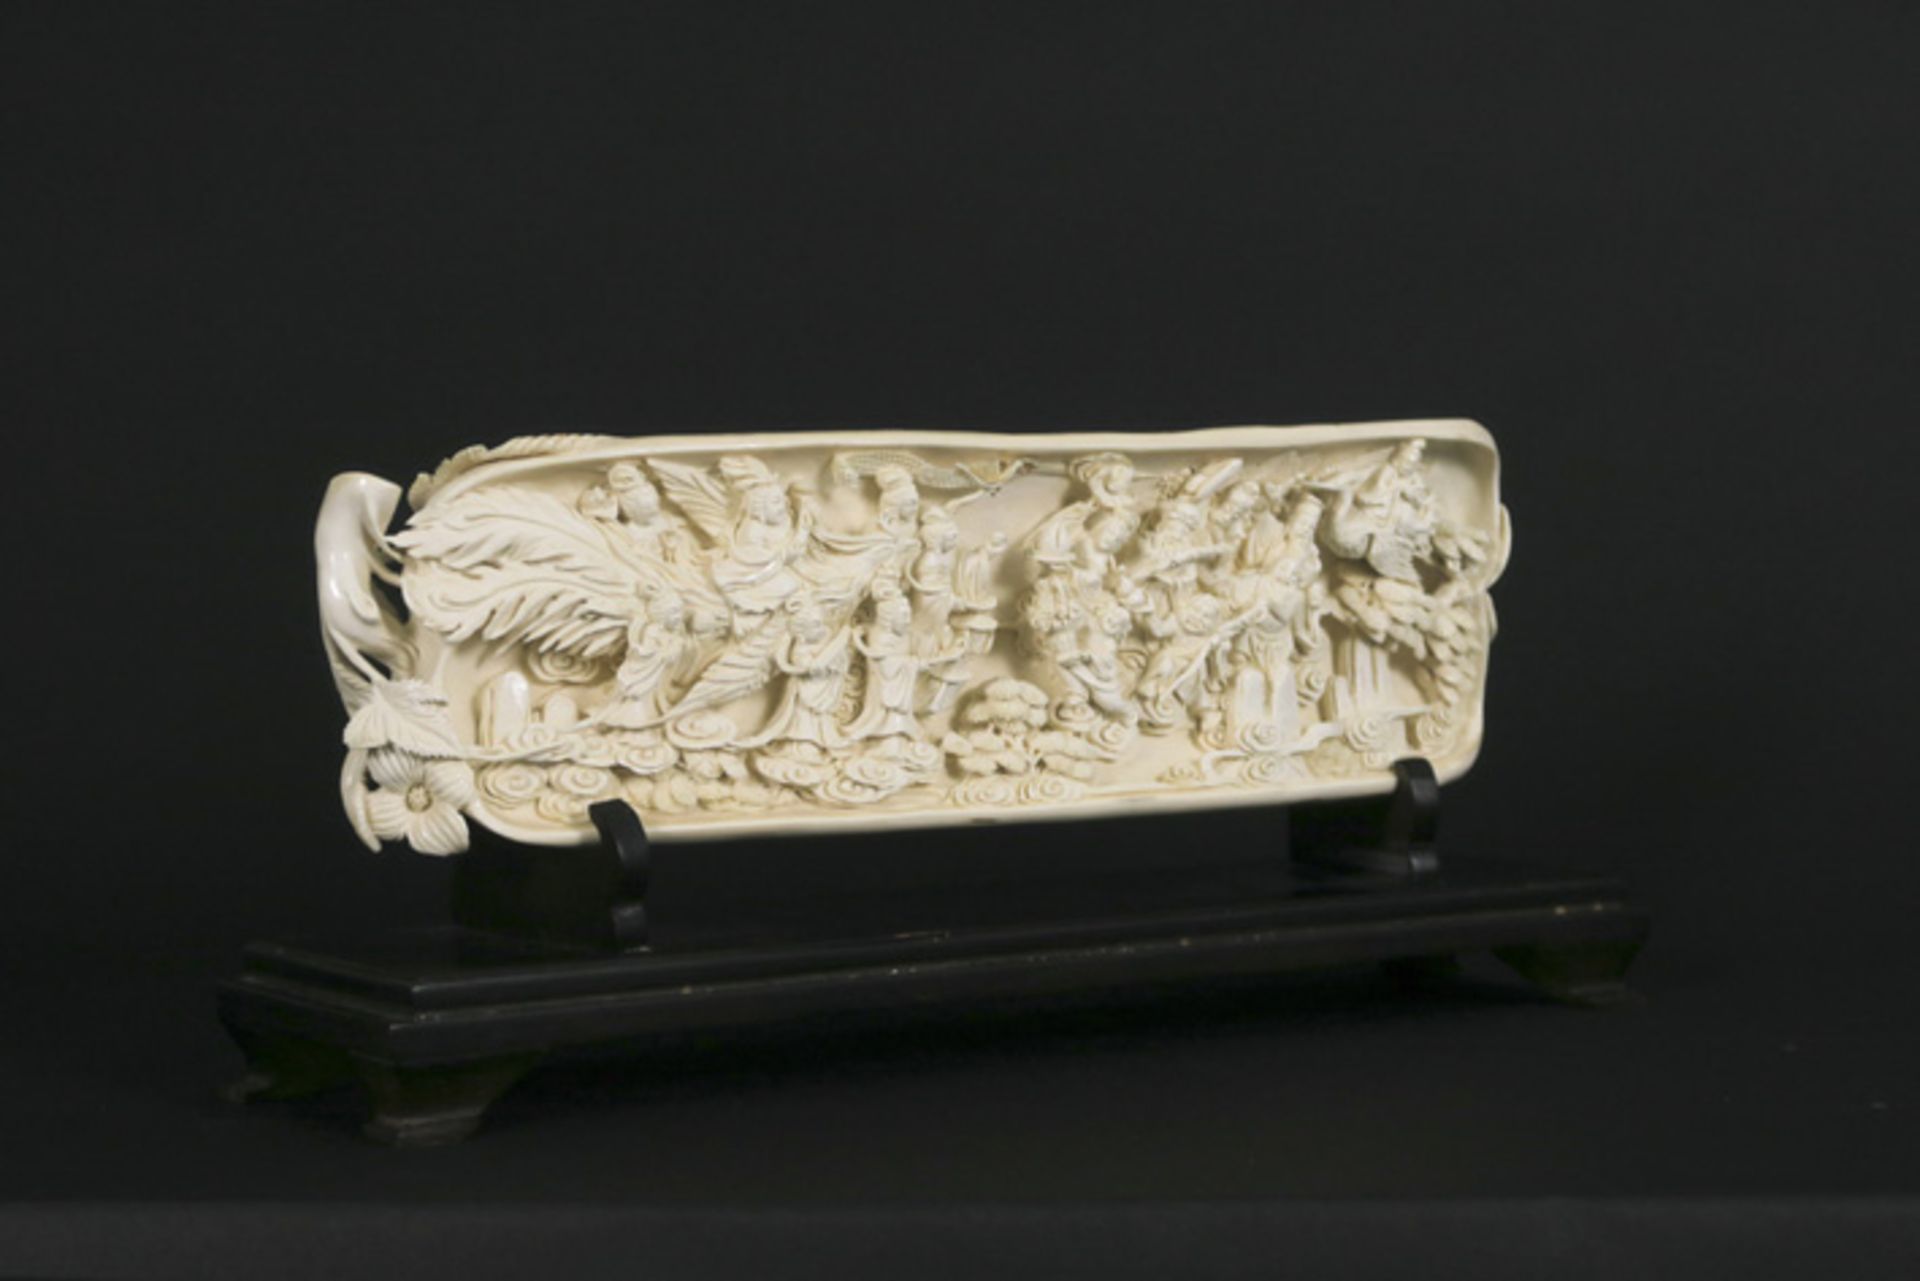 CHINA - QING-DYNASTIE (1644 - 1912) - ca 1900/10 prachtige sculptuur in ivoor met [...] - Bild 2 aus 4